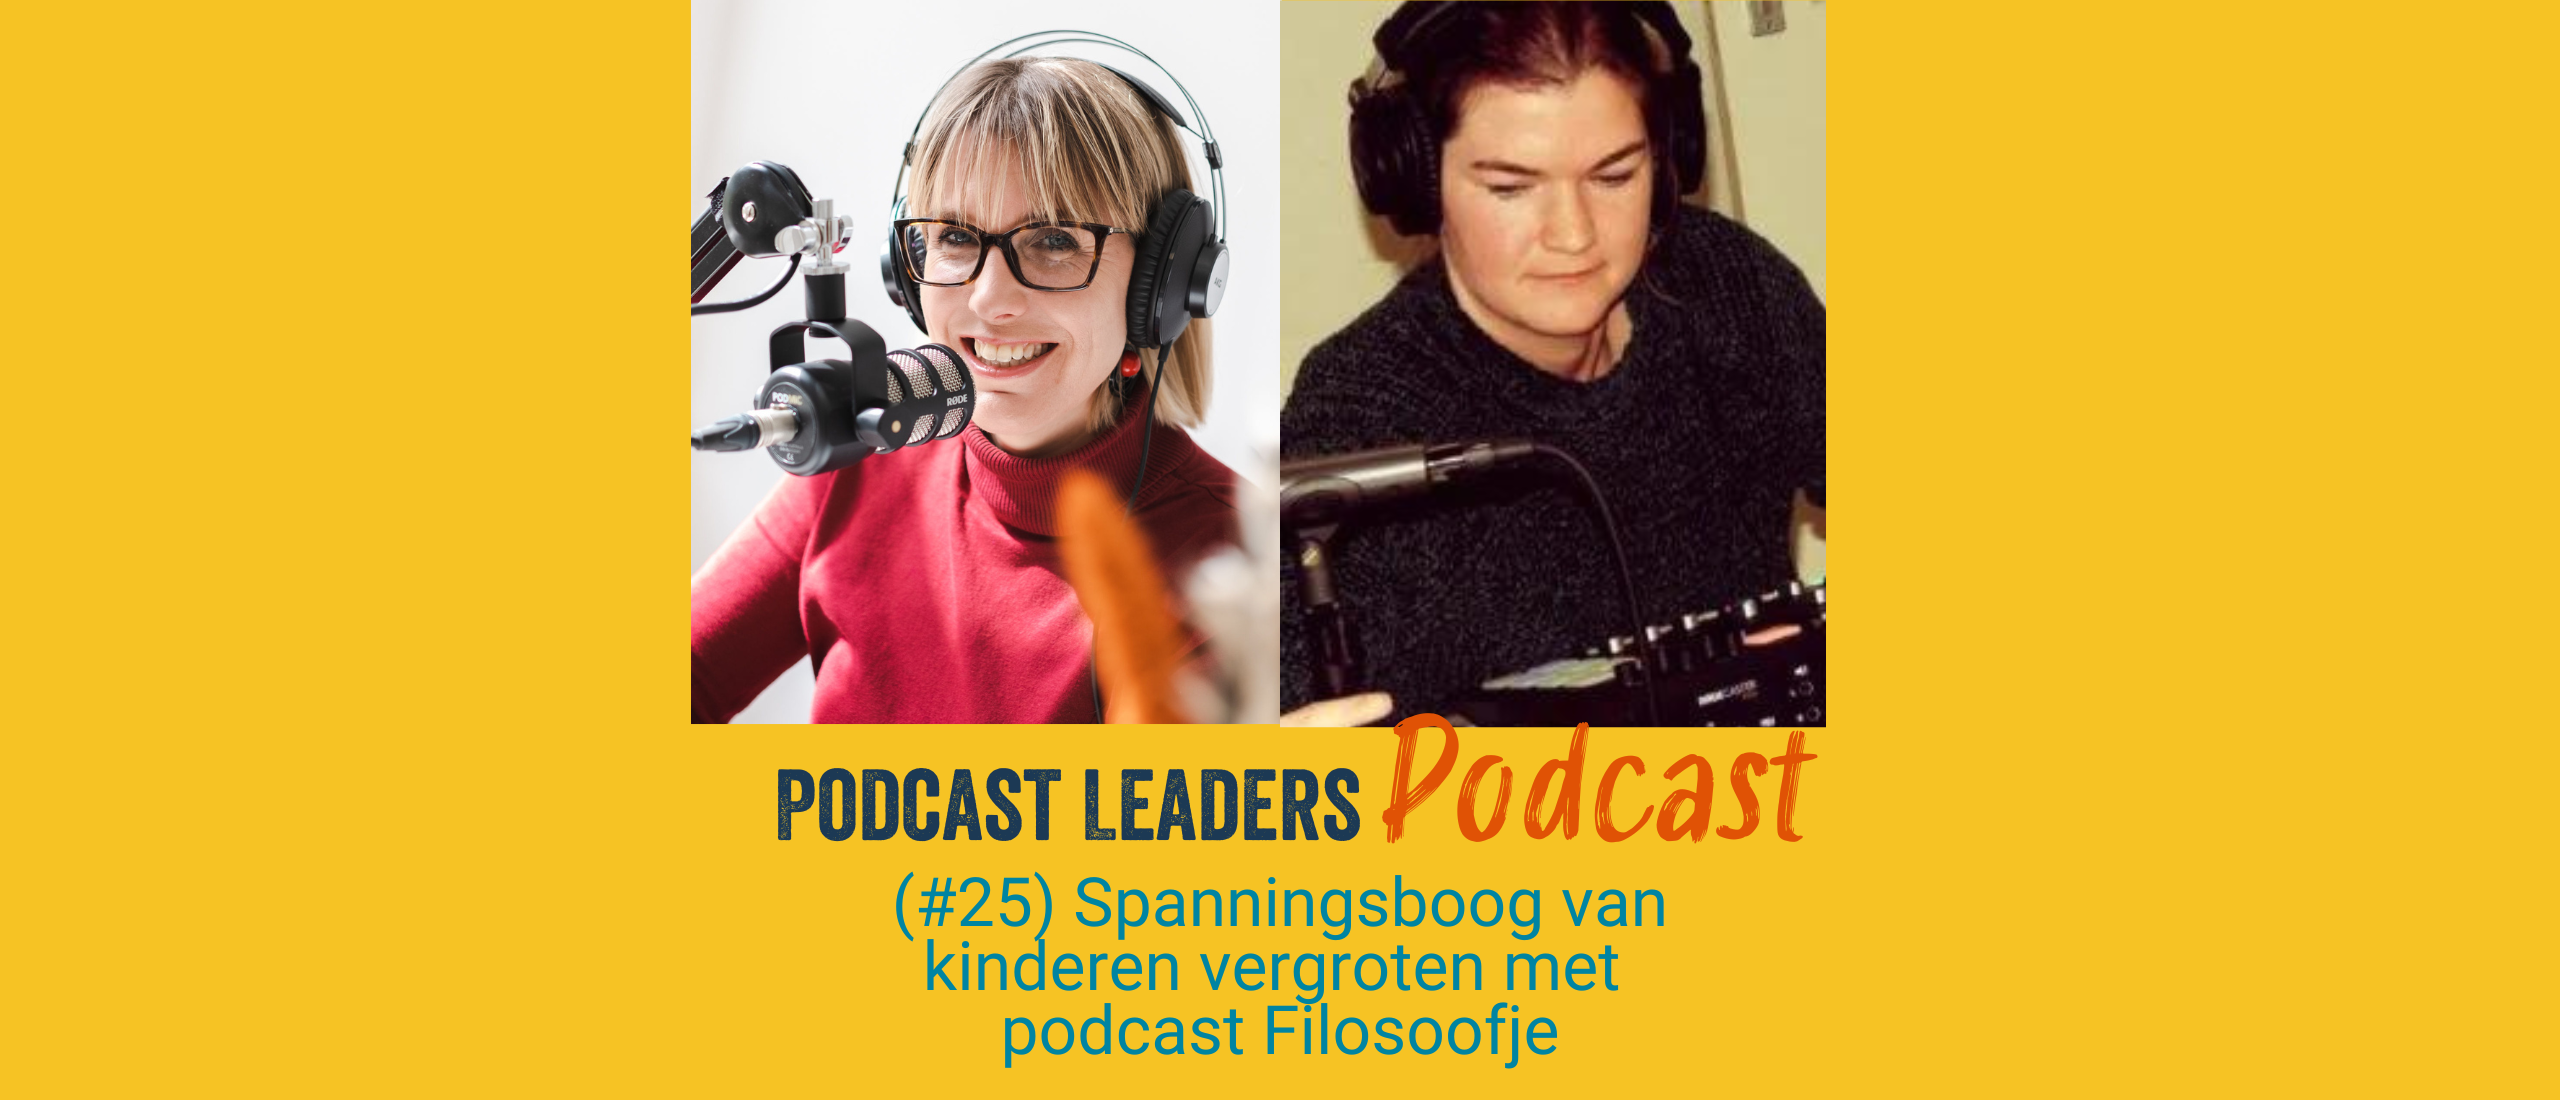 Kinderpodcast Filosoofje een voorbeeld voor iedere podcastmaker